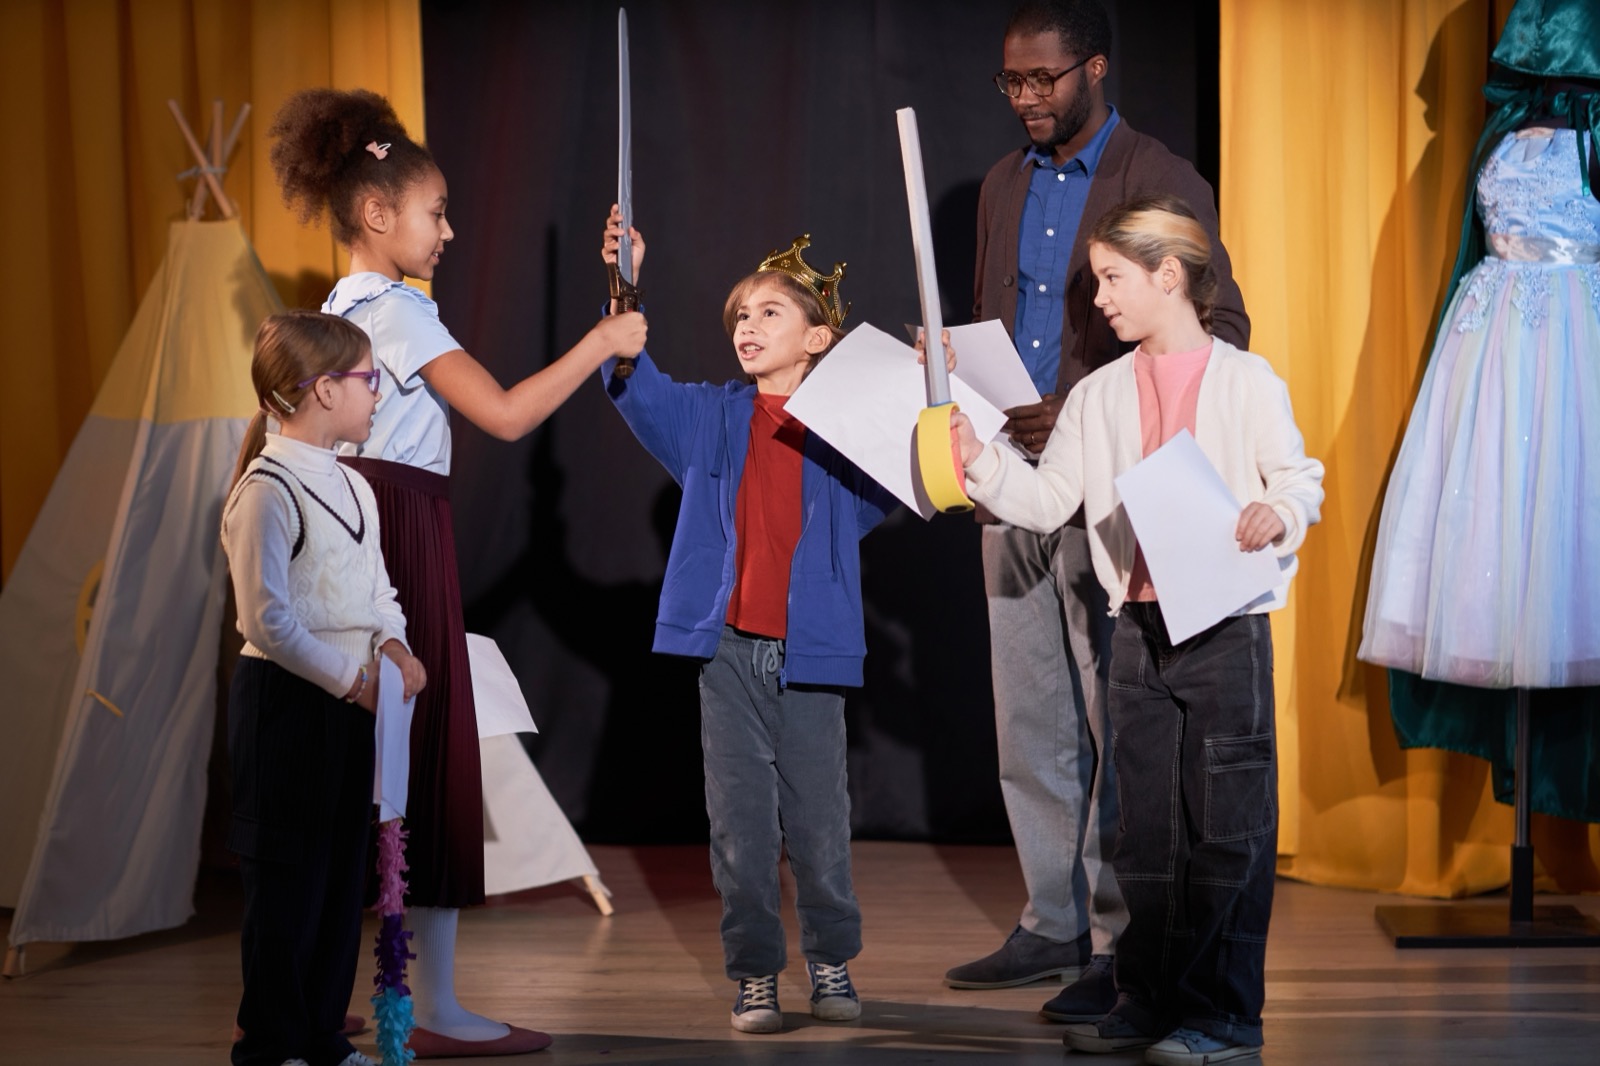 Niños ensayando una obra escolar en el escenario en un teatro con un príncipe recitando líneas.